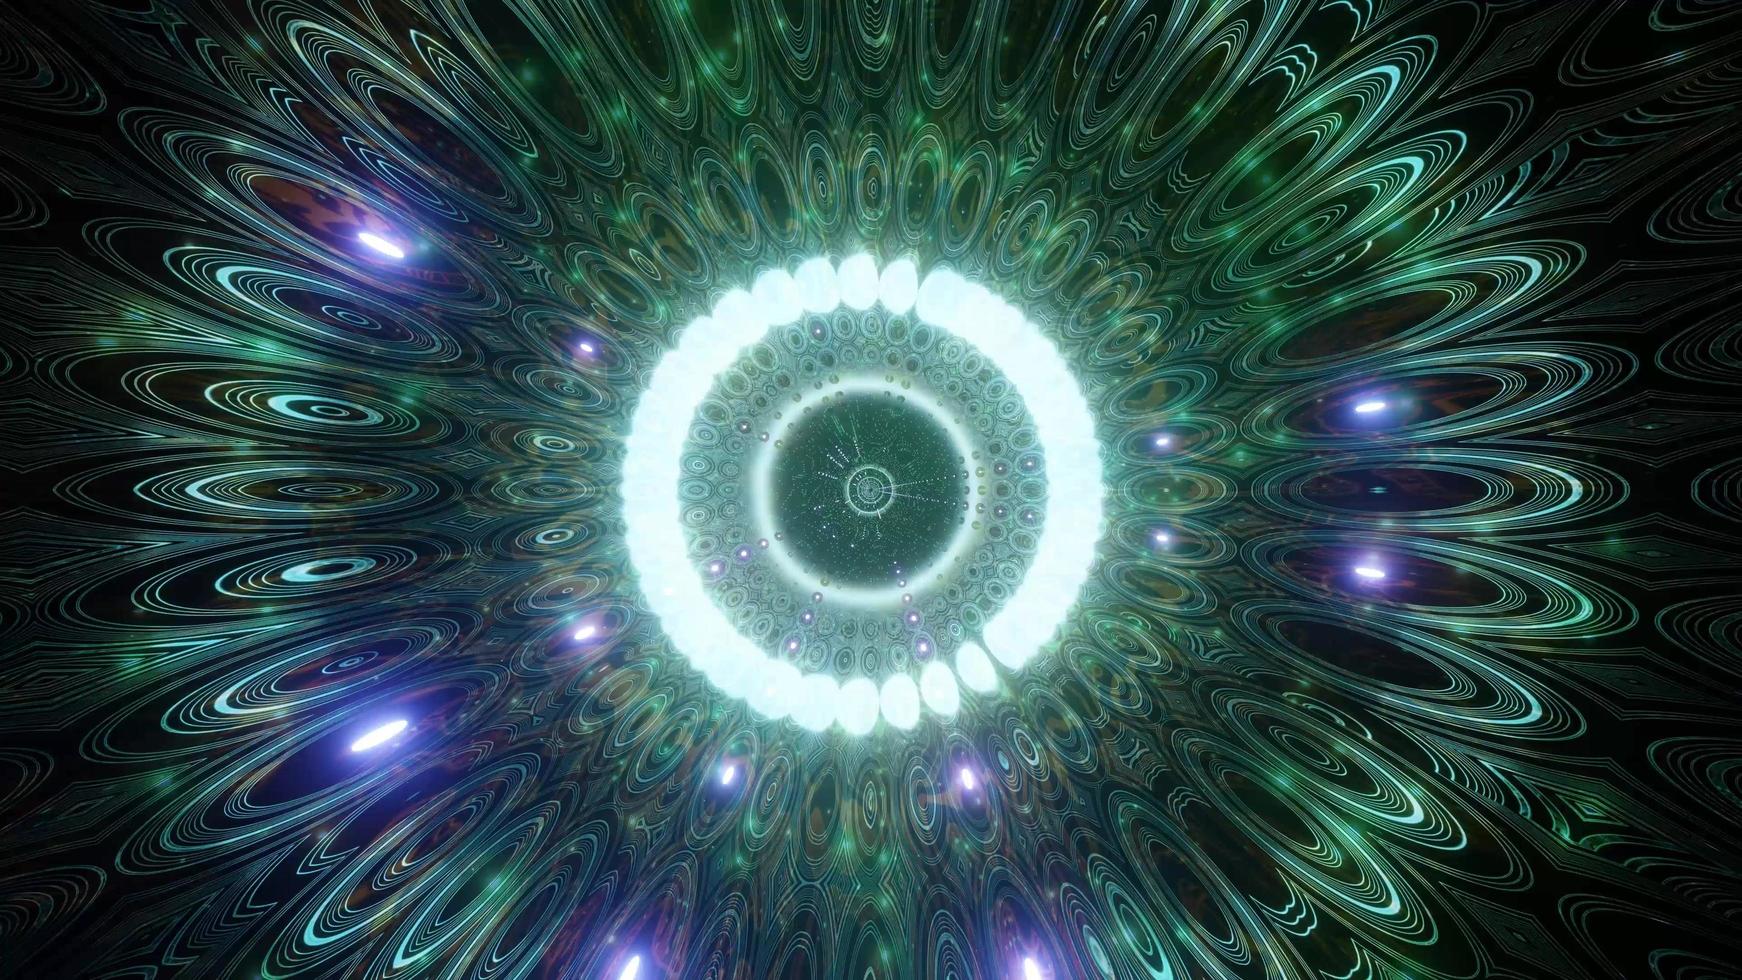 grönt, blått och vitt ljus och former i kalejdoskop 3d illustration för bakgrund eller tapet foto